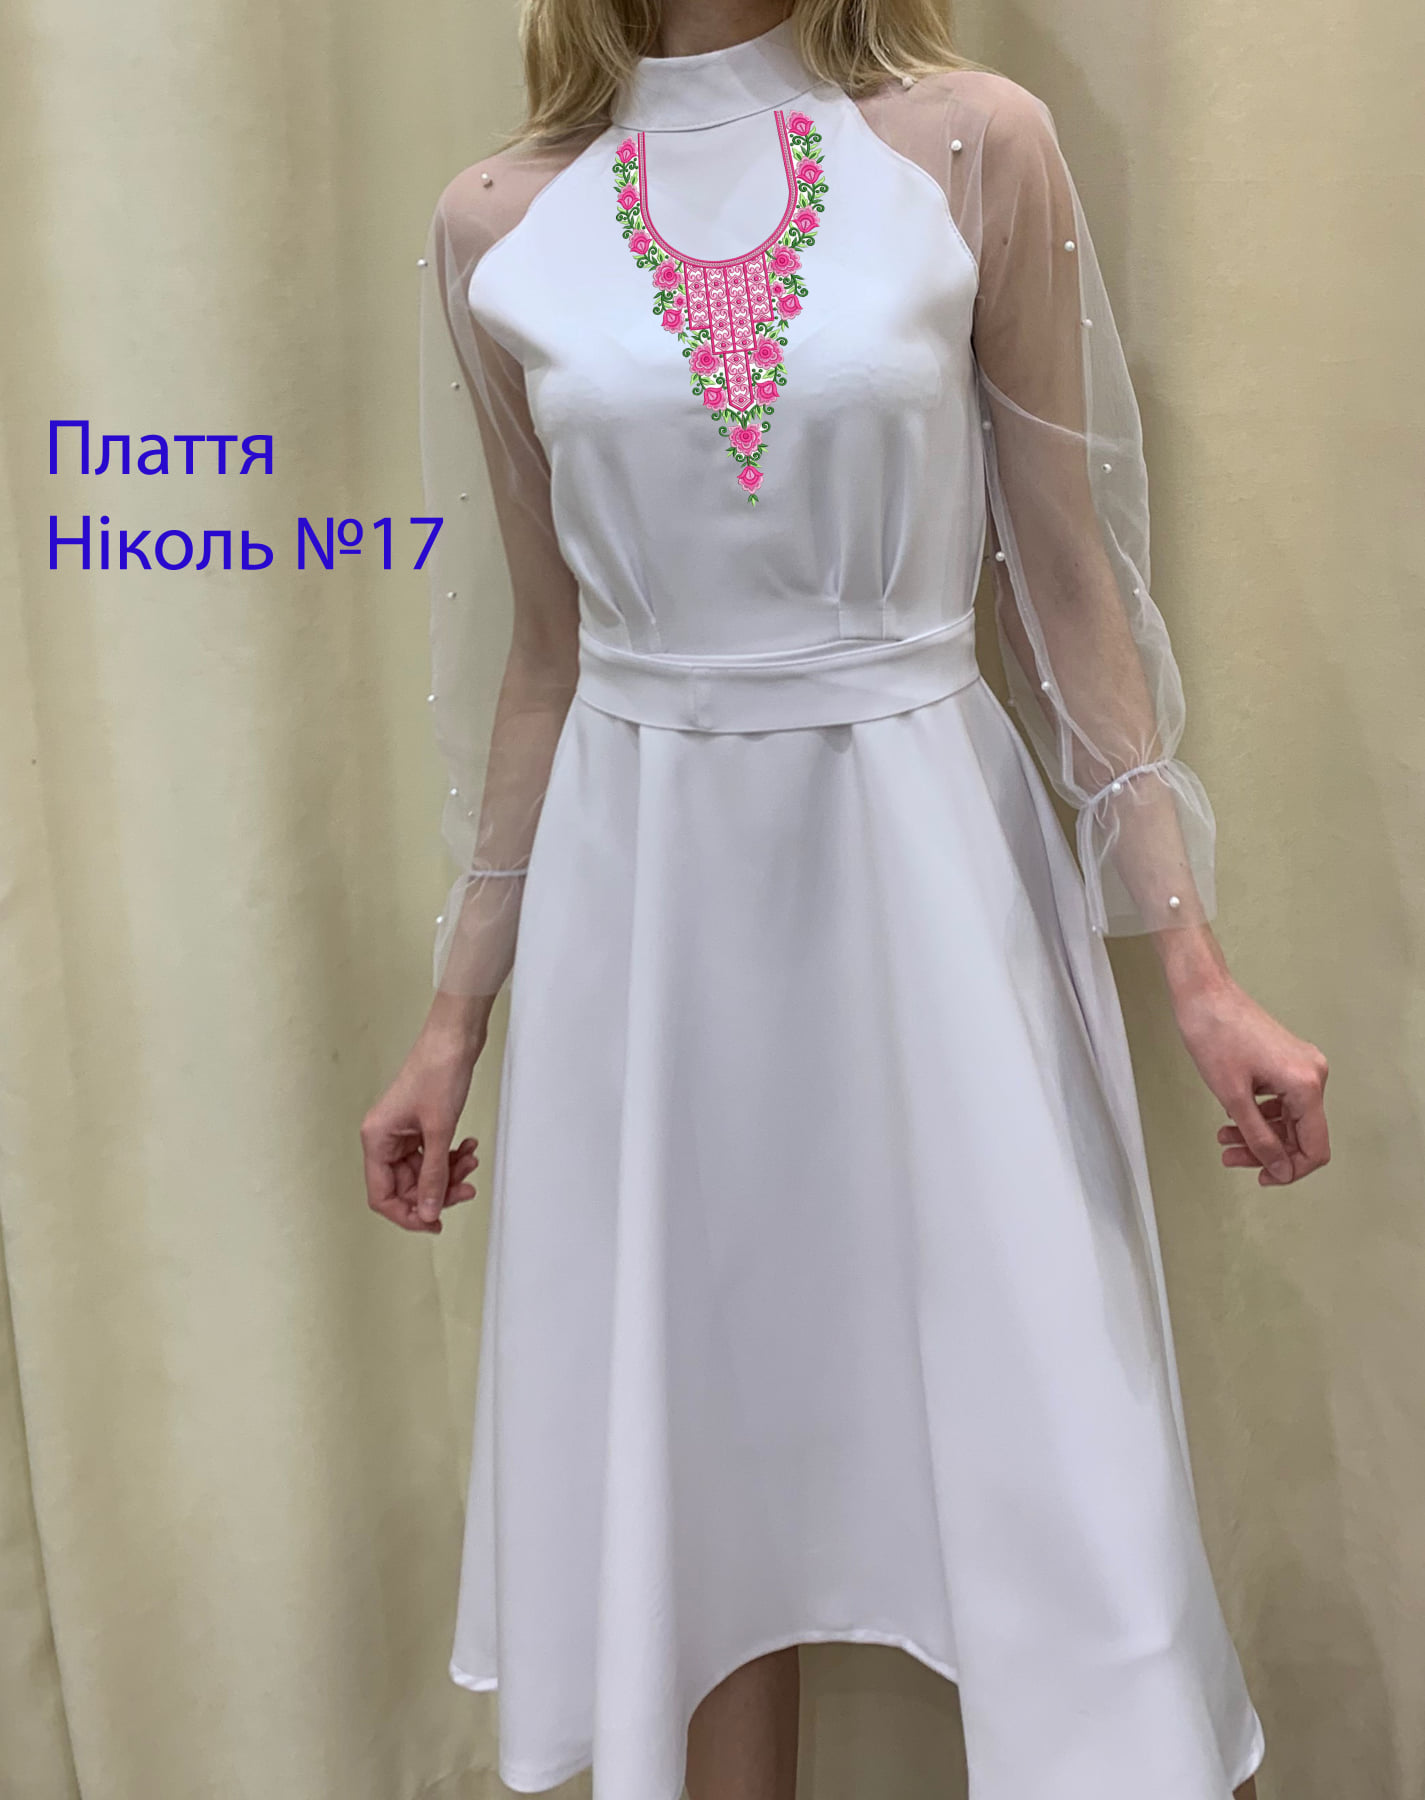 Пошита жіноча сукня для вишивки Ніколь №17